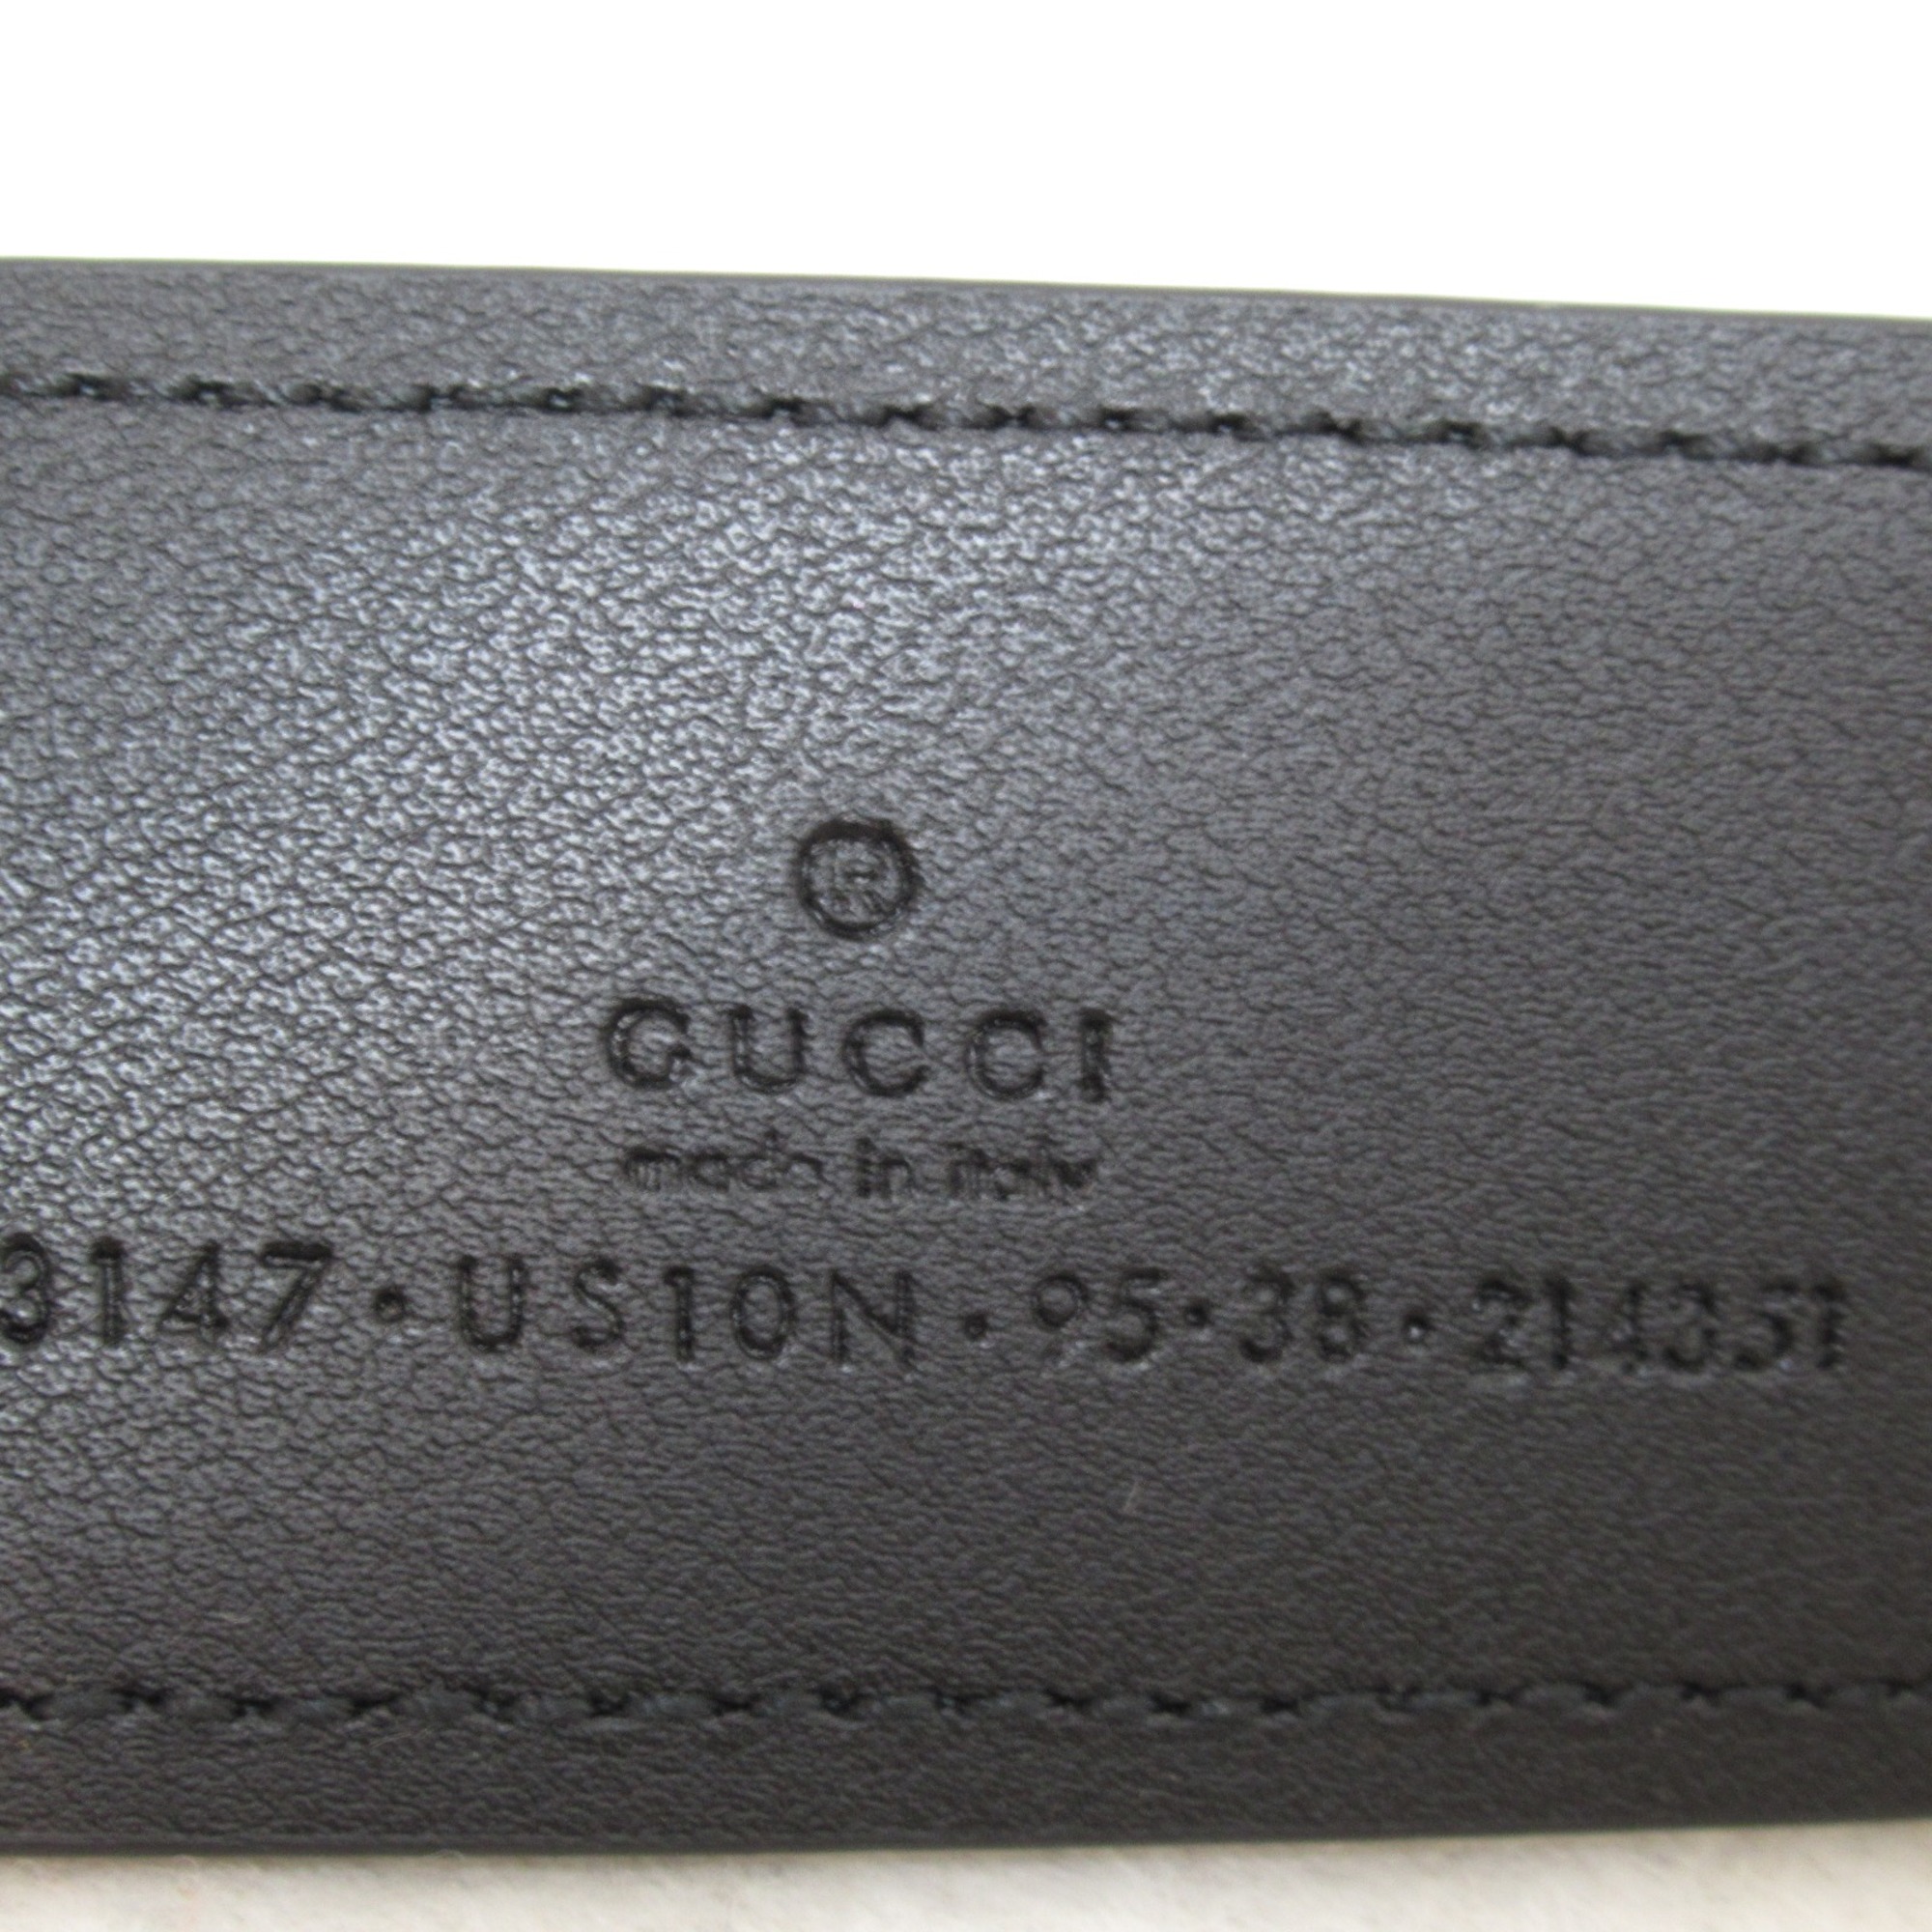 GUCCI blondie belt Black leather 703147US10N100095